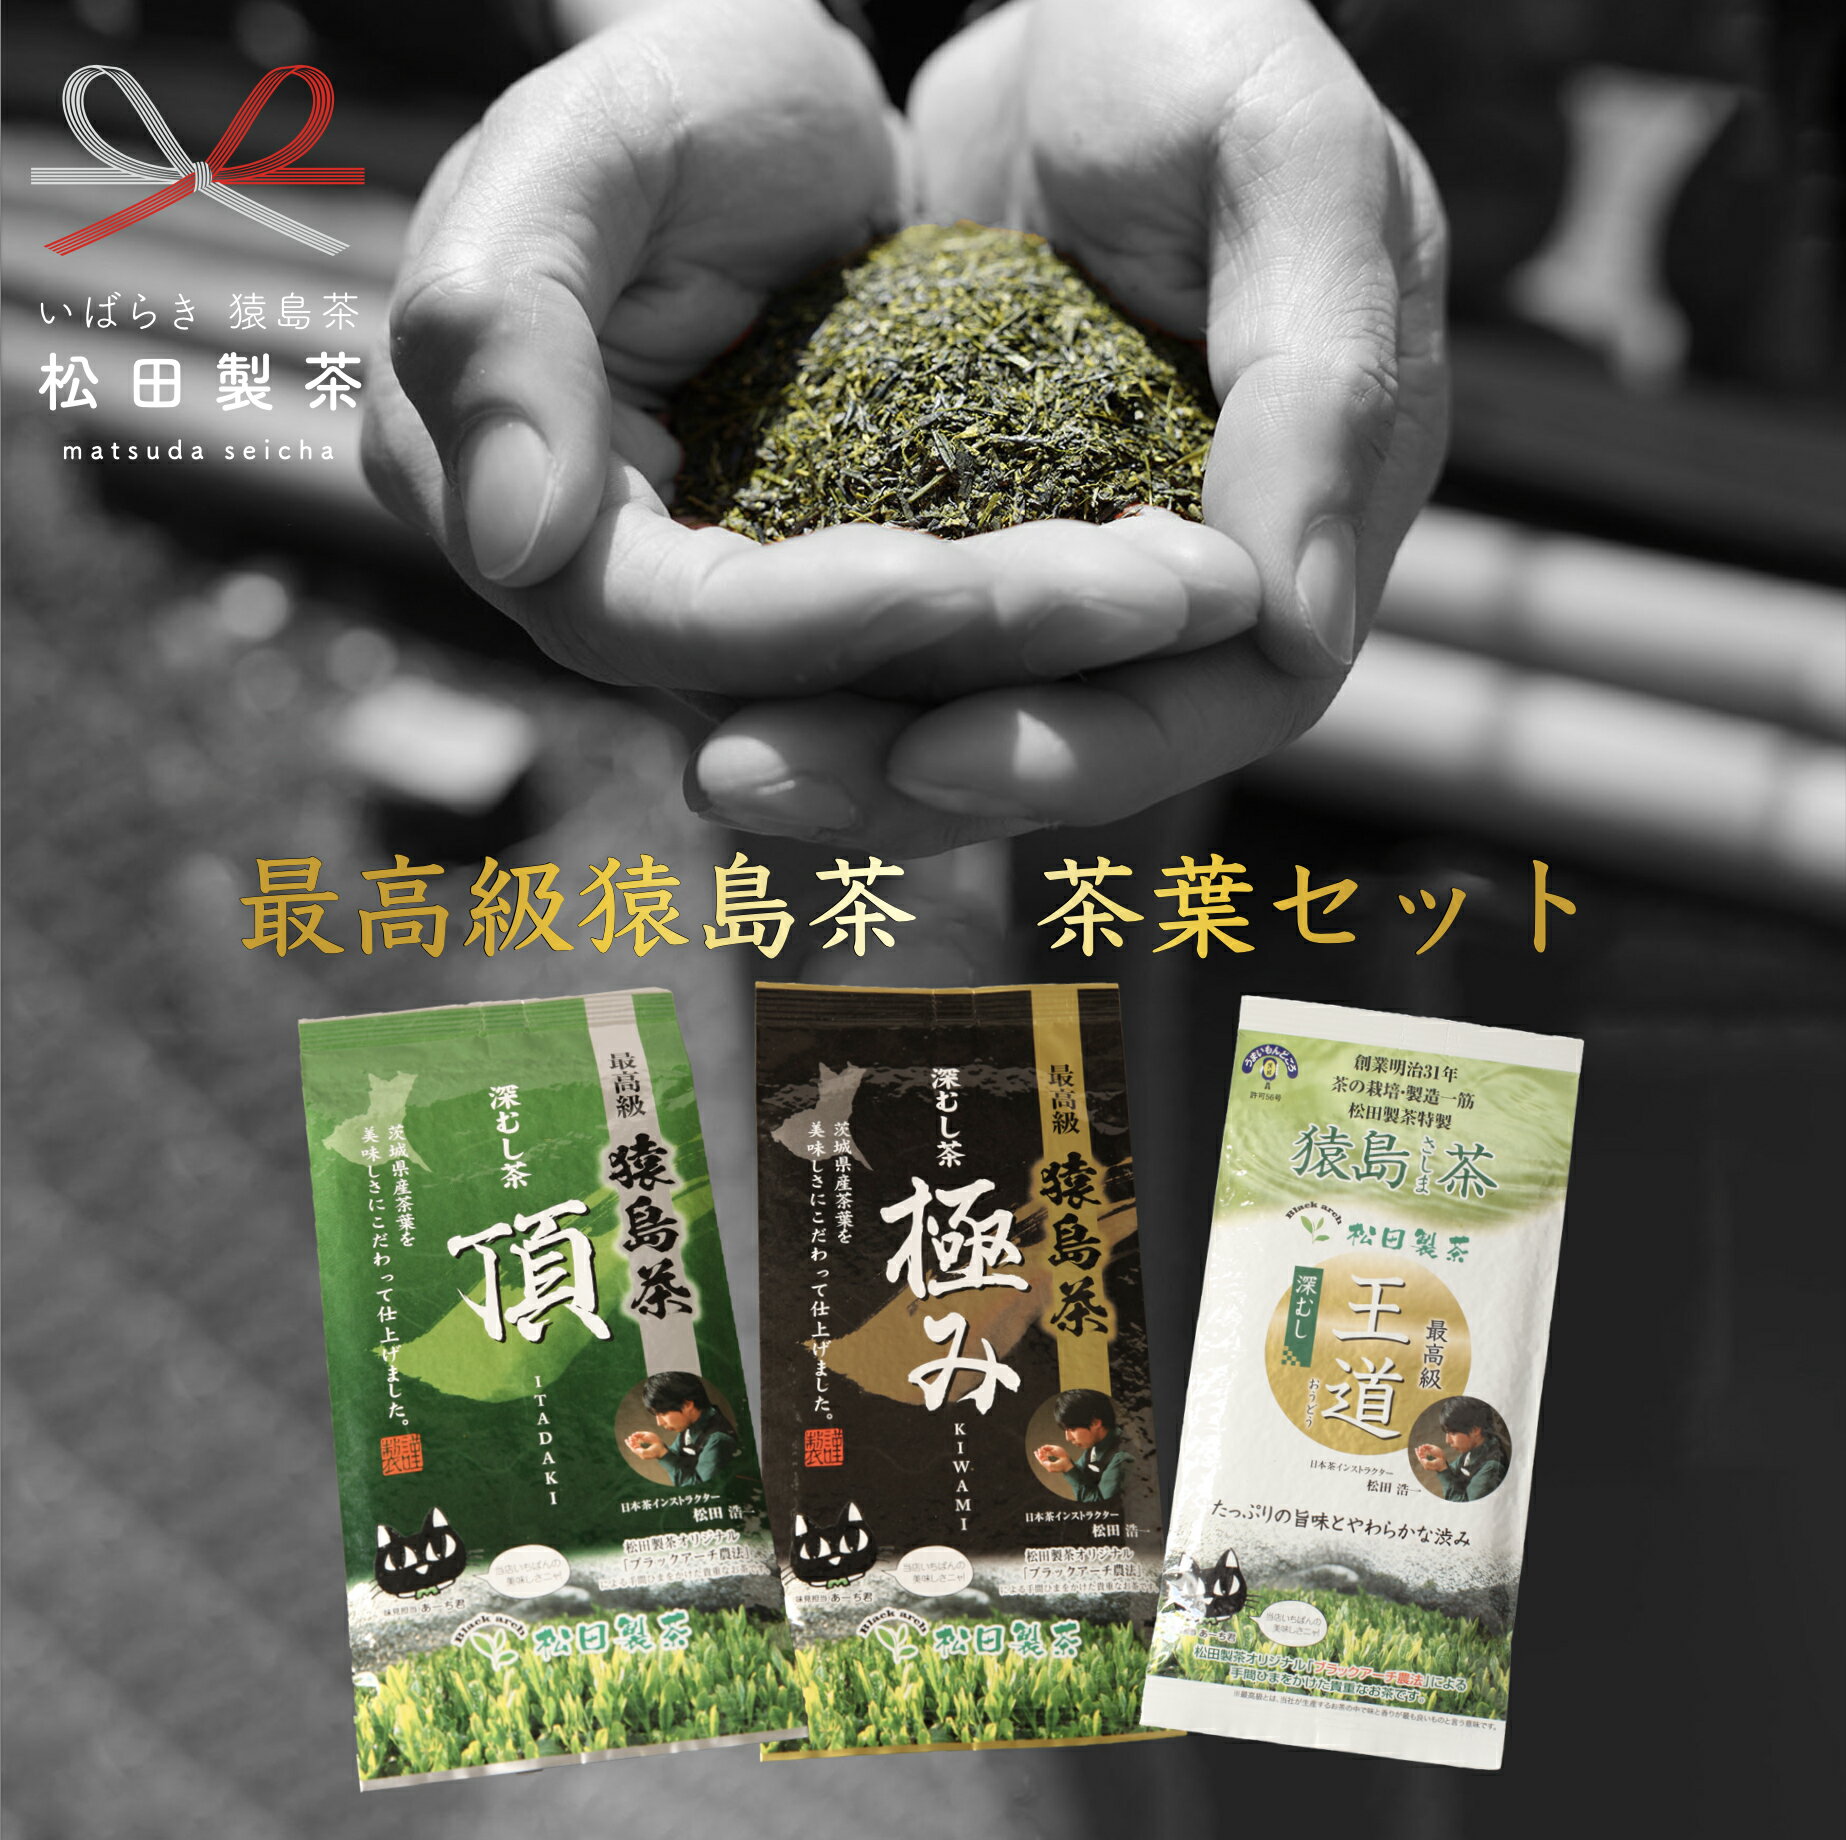 最高級 猿島茶 茶葉 セット (100g×3種) 日本茶 緑茶 詰合せ ブラックアーチ農法